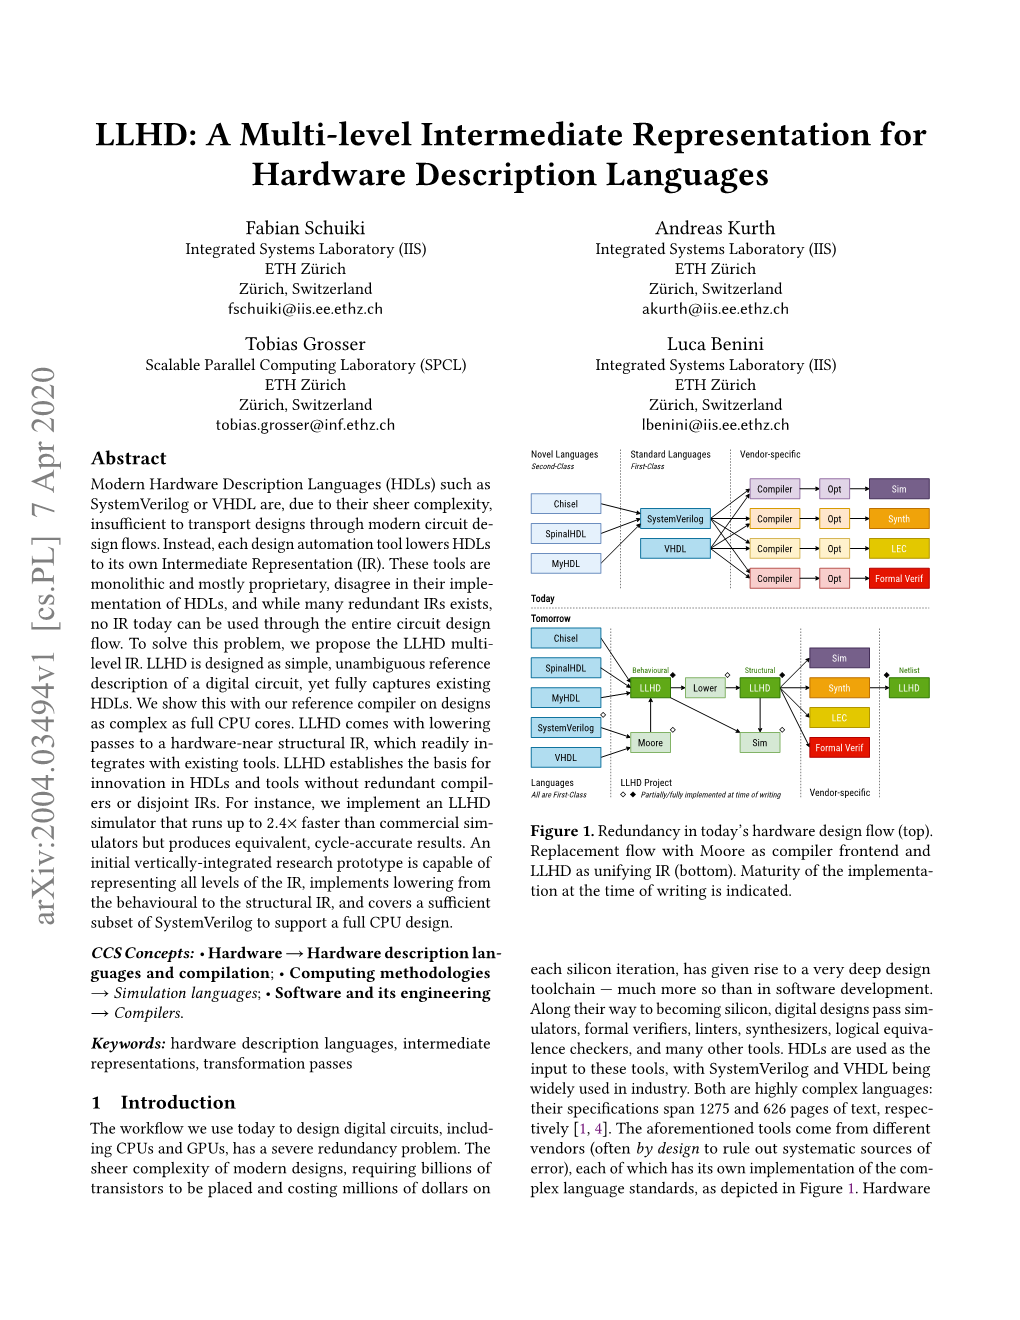 LLHD: a Multi-Level Intermediate Representation for Hardware Description Languages